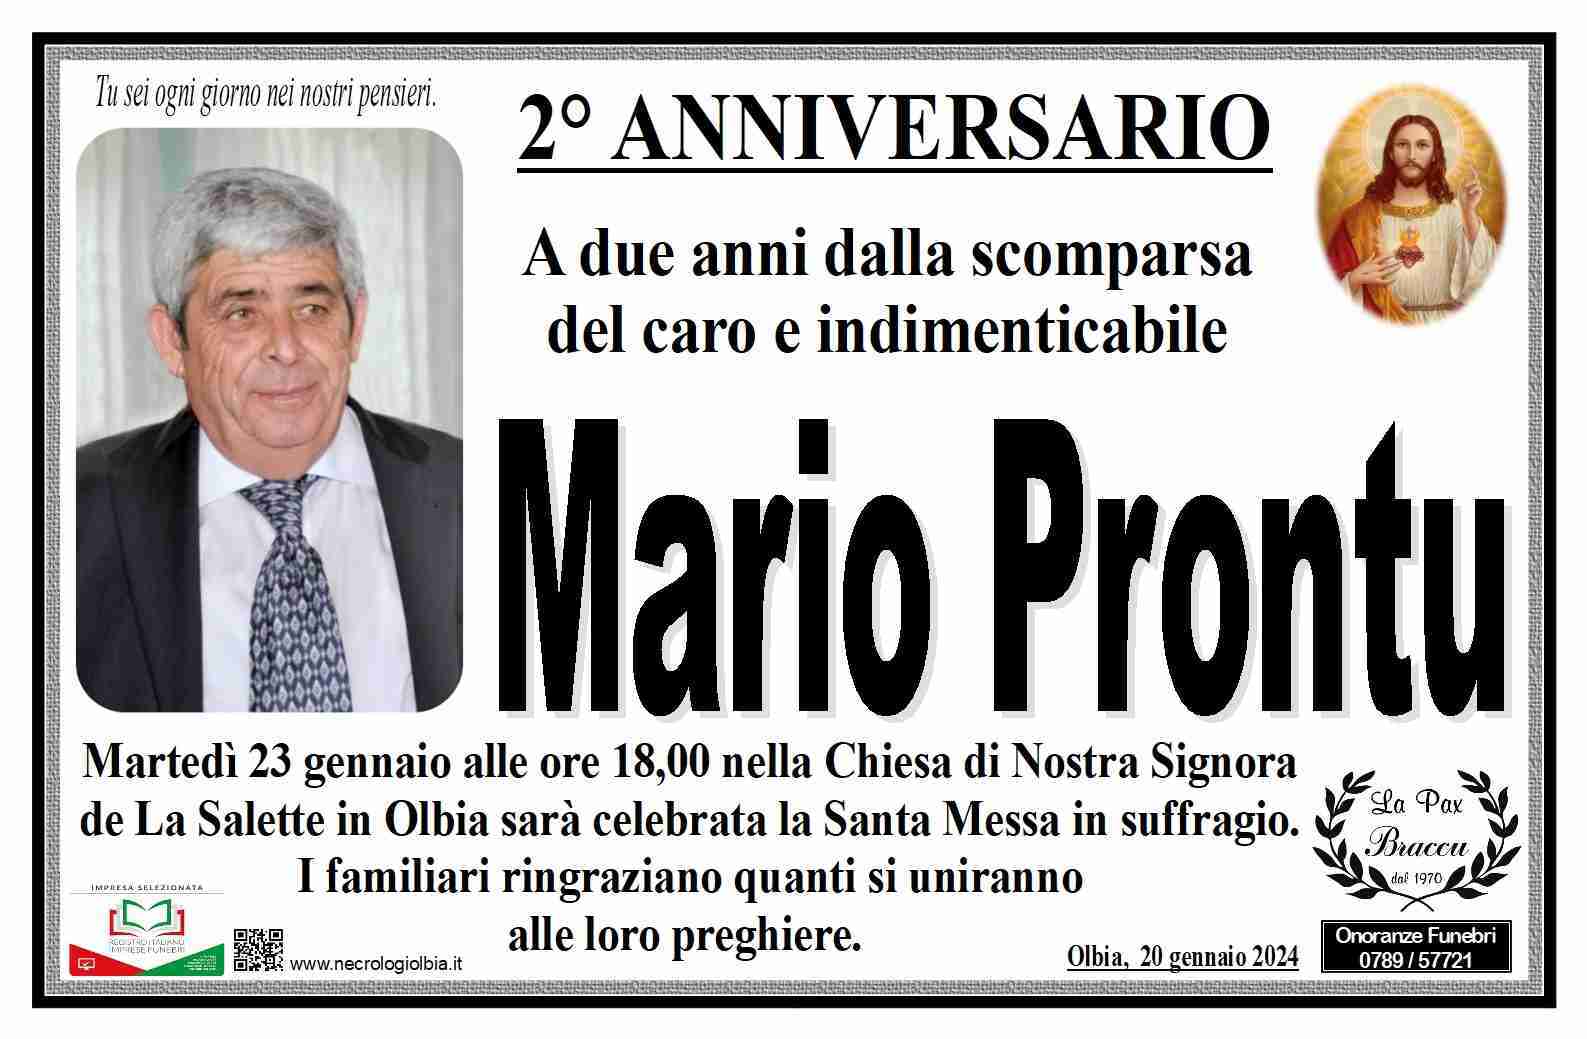 Mario Prontu